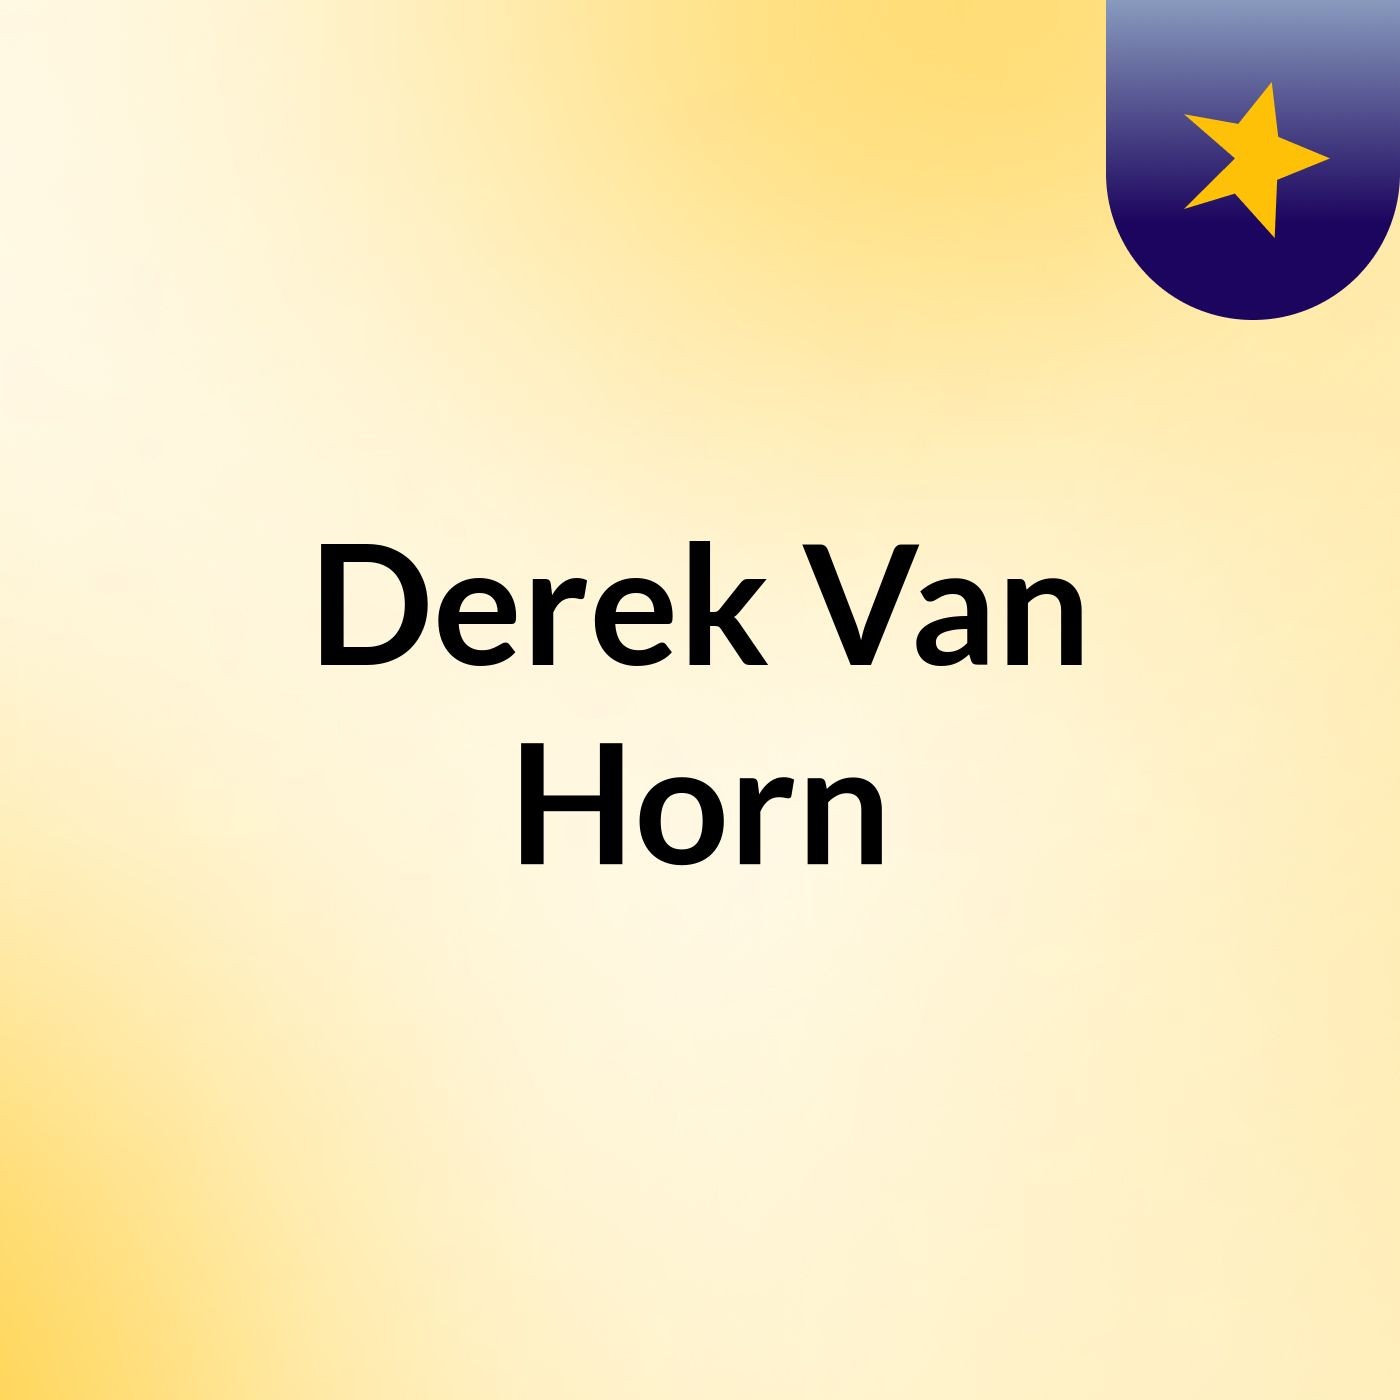 Derek Van Horn